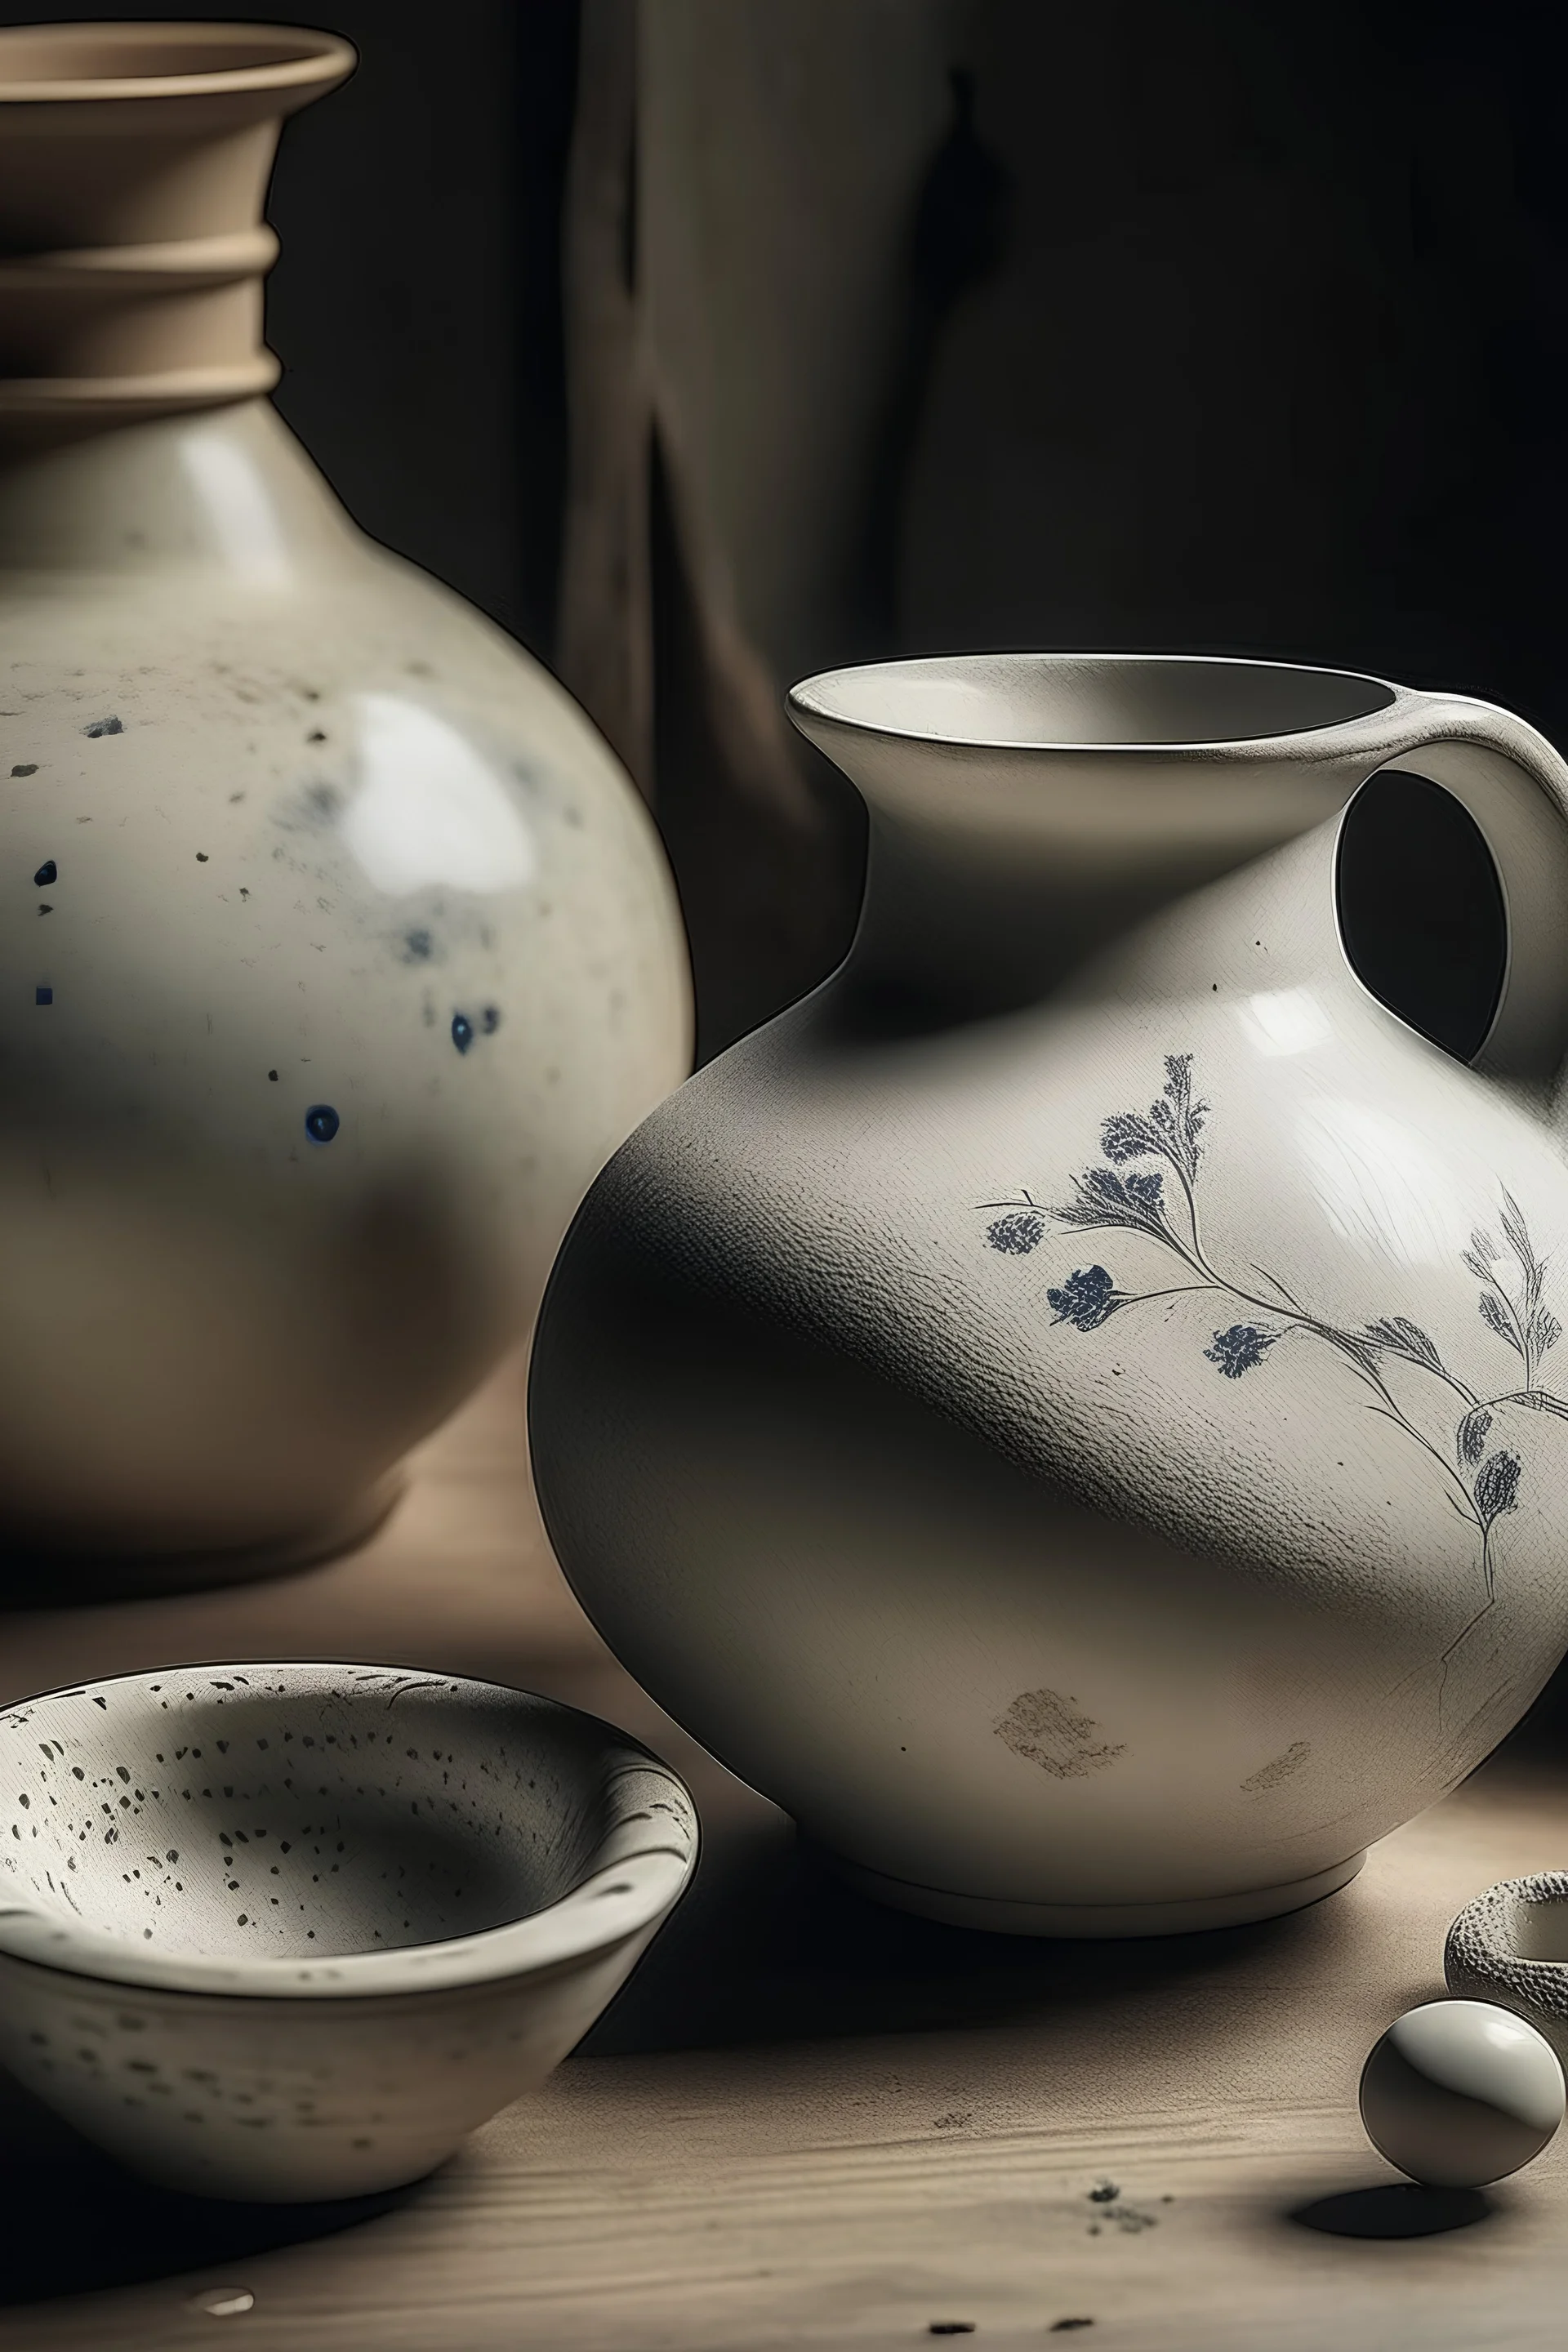 Ceramic art, old, simple, creative